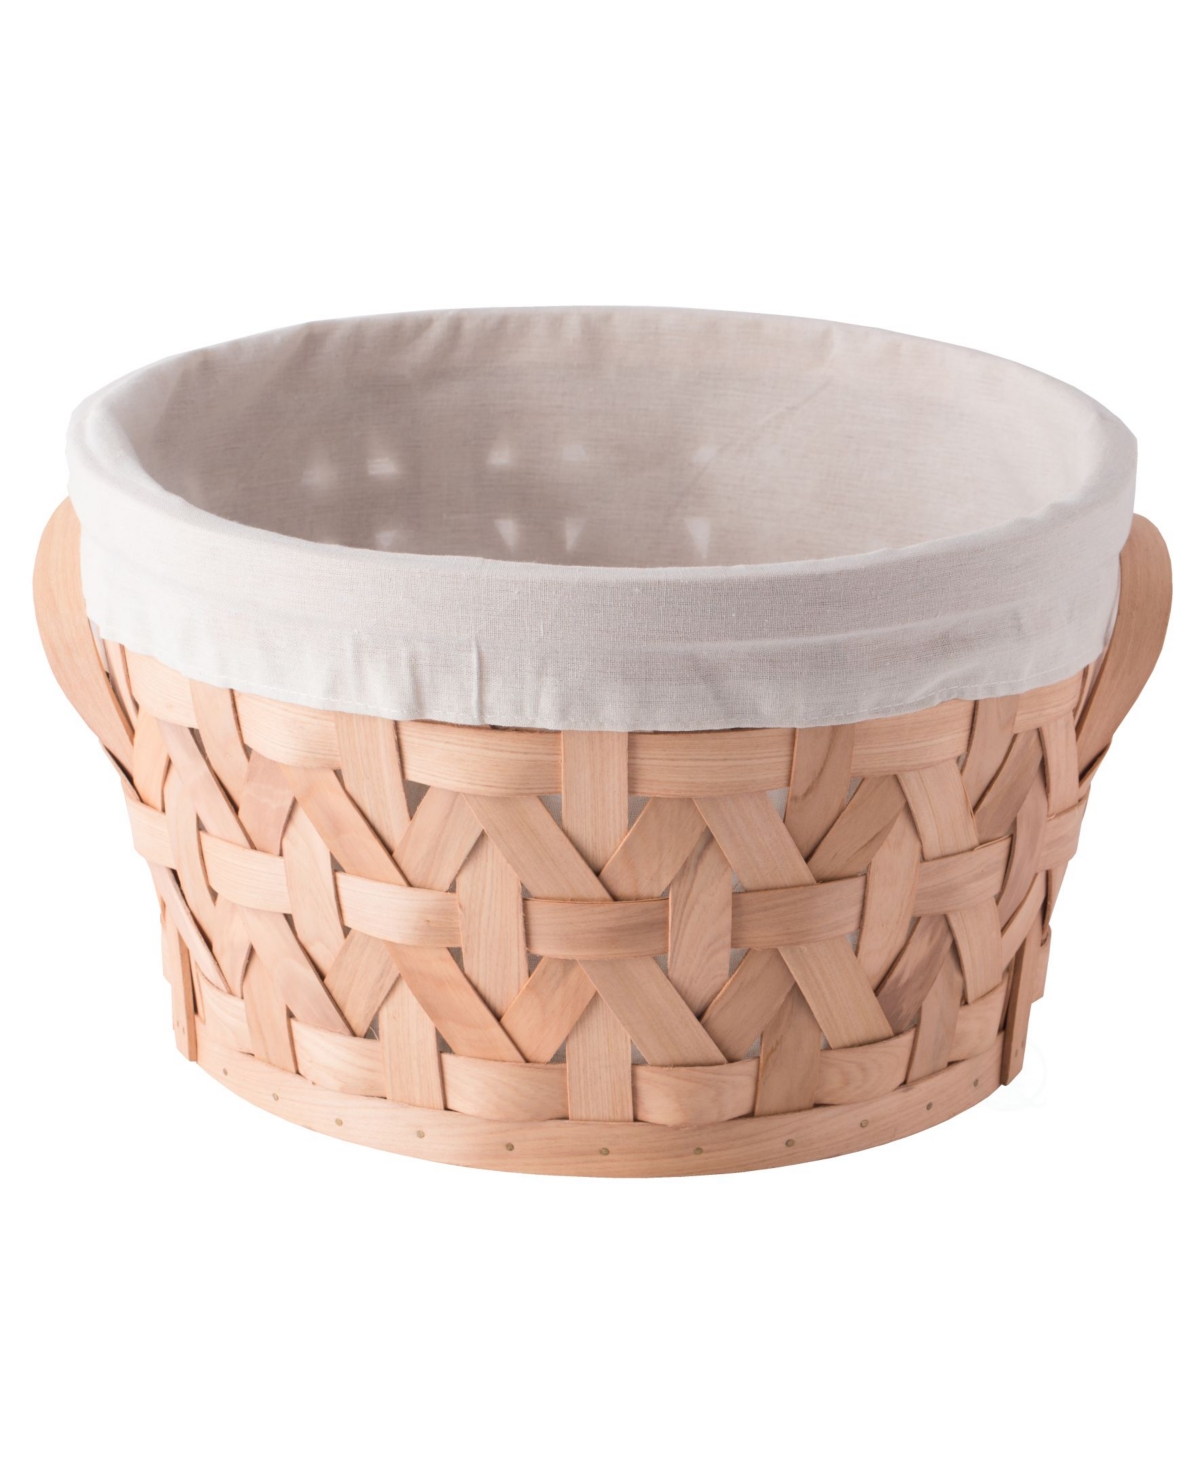 Wooden Round Display Medium Basket Bins - Brown